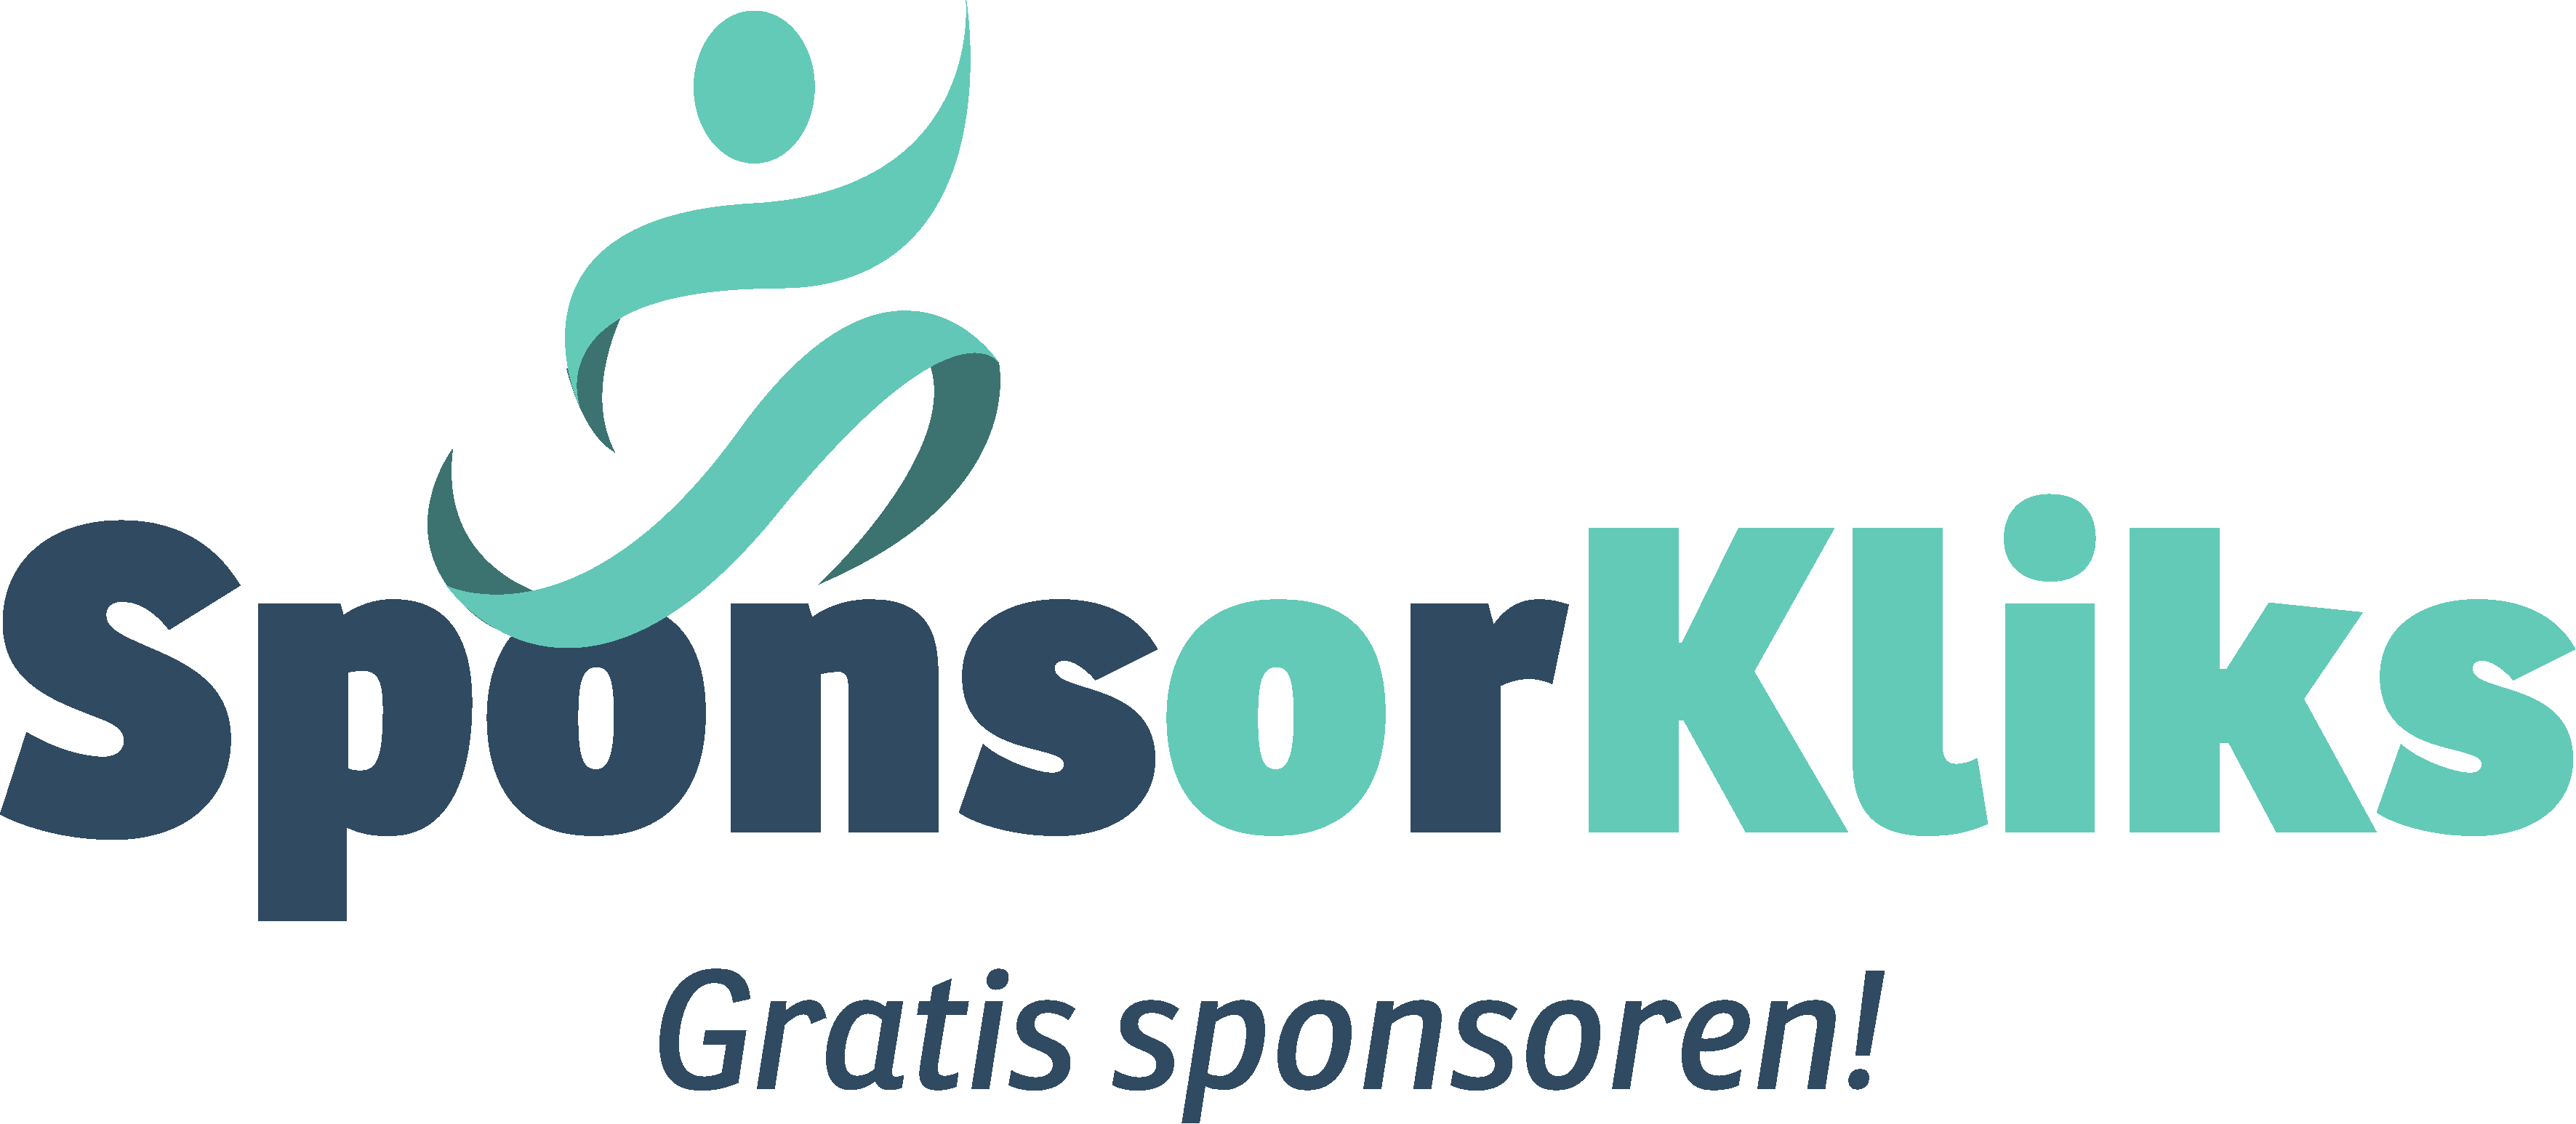 Logo-Sponsorkliks